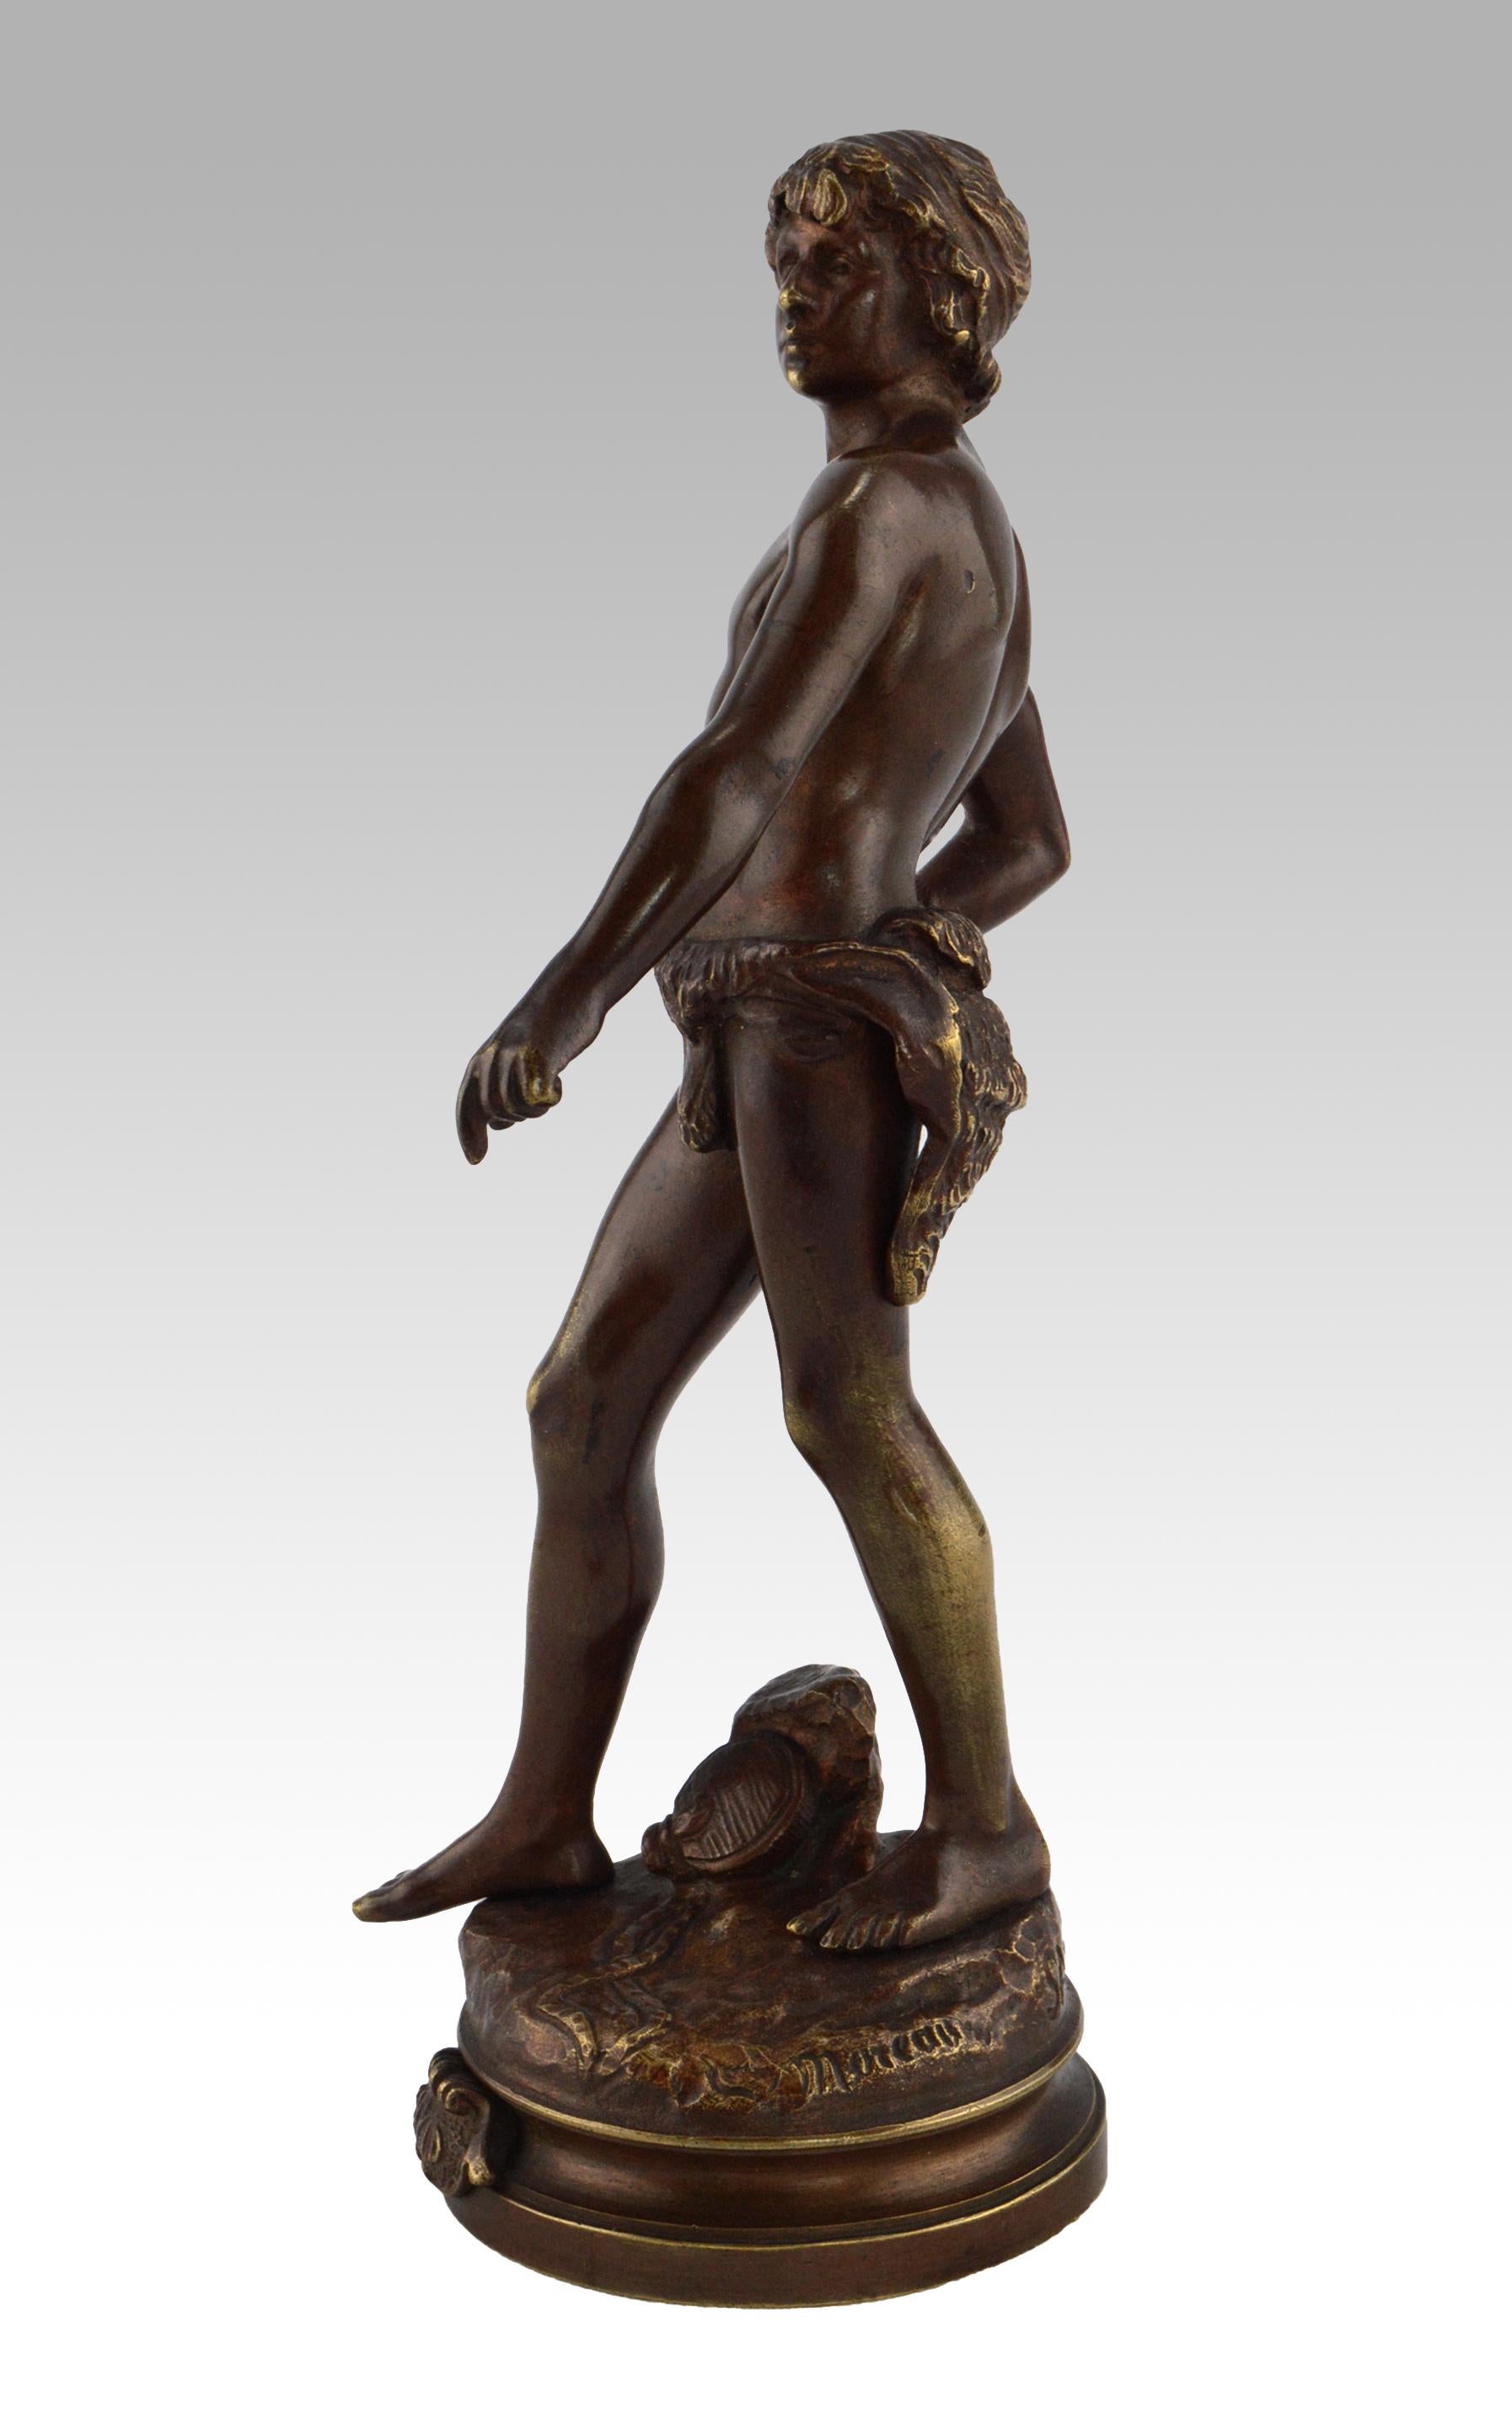 19th Century bronze sculpture of David - Sculpture by Louis Auguste Moreau